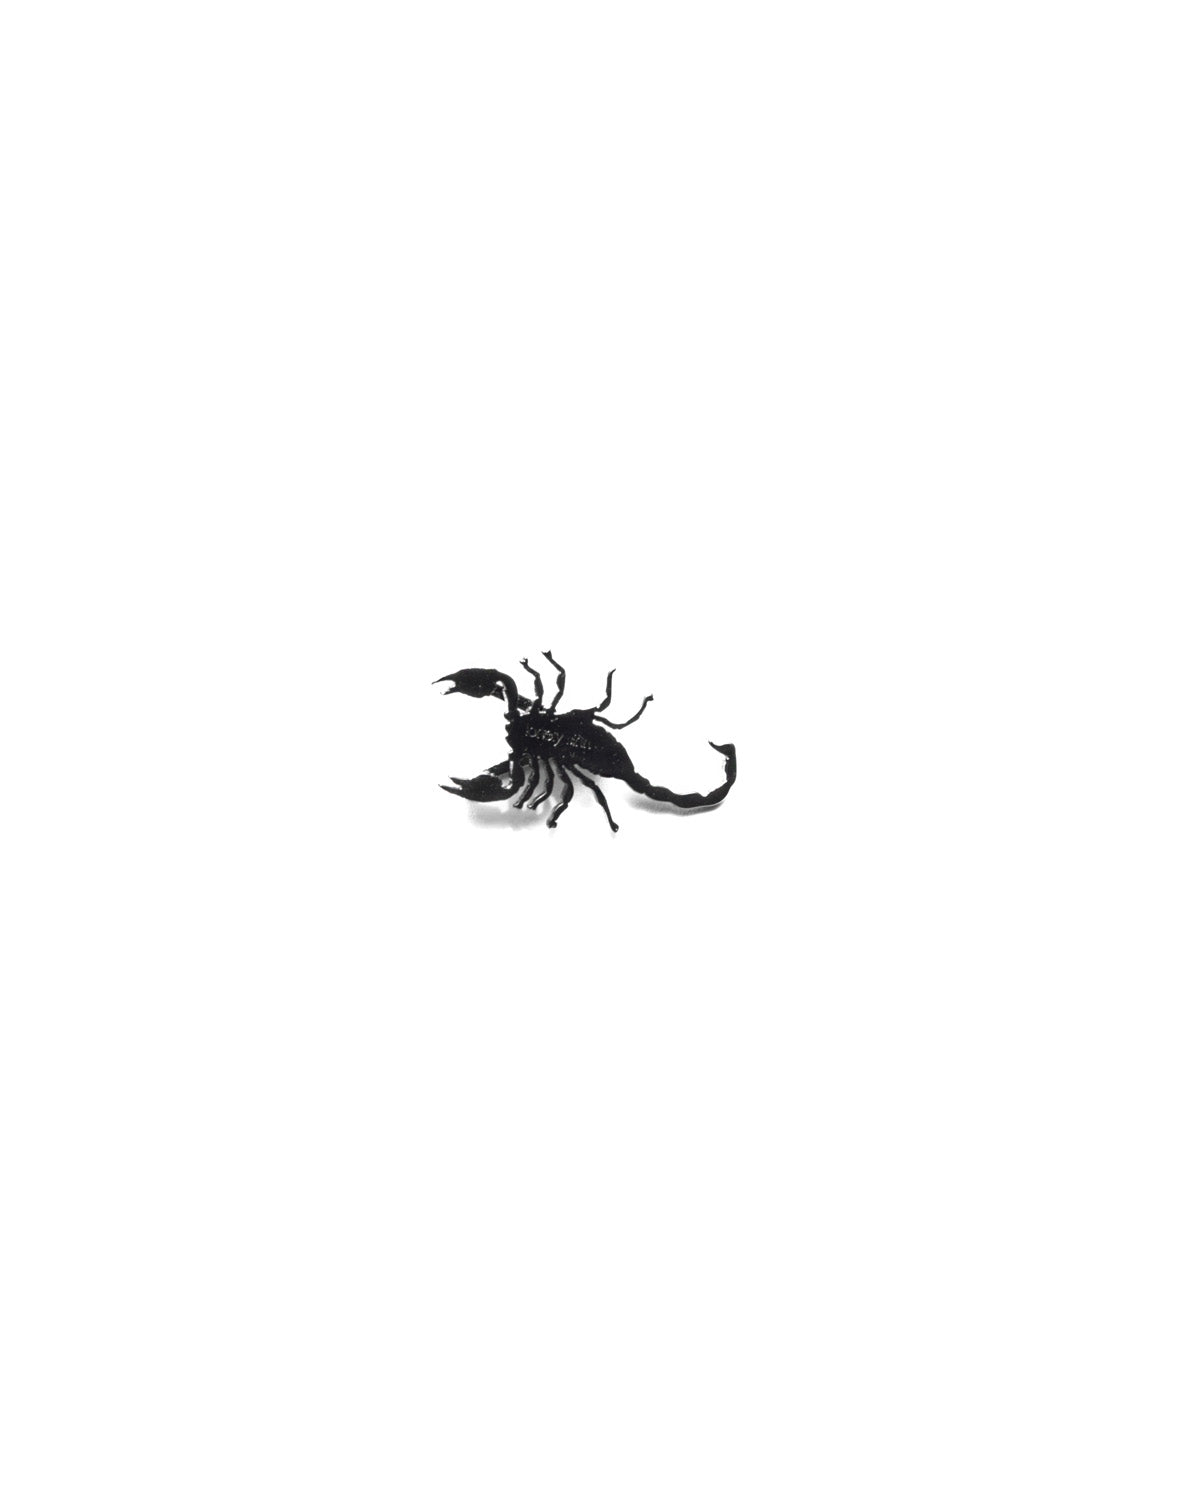 Scorpion Shoe Pendant Black